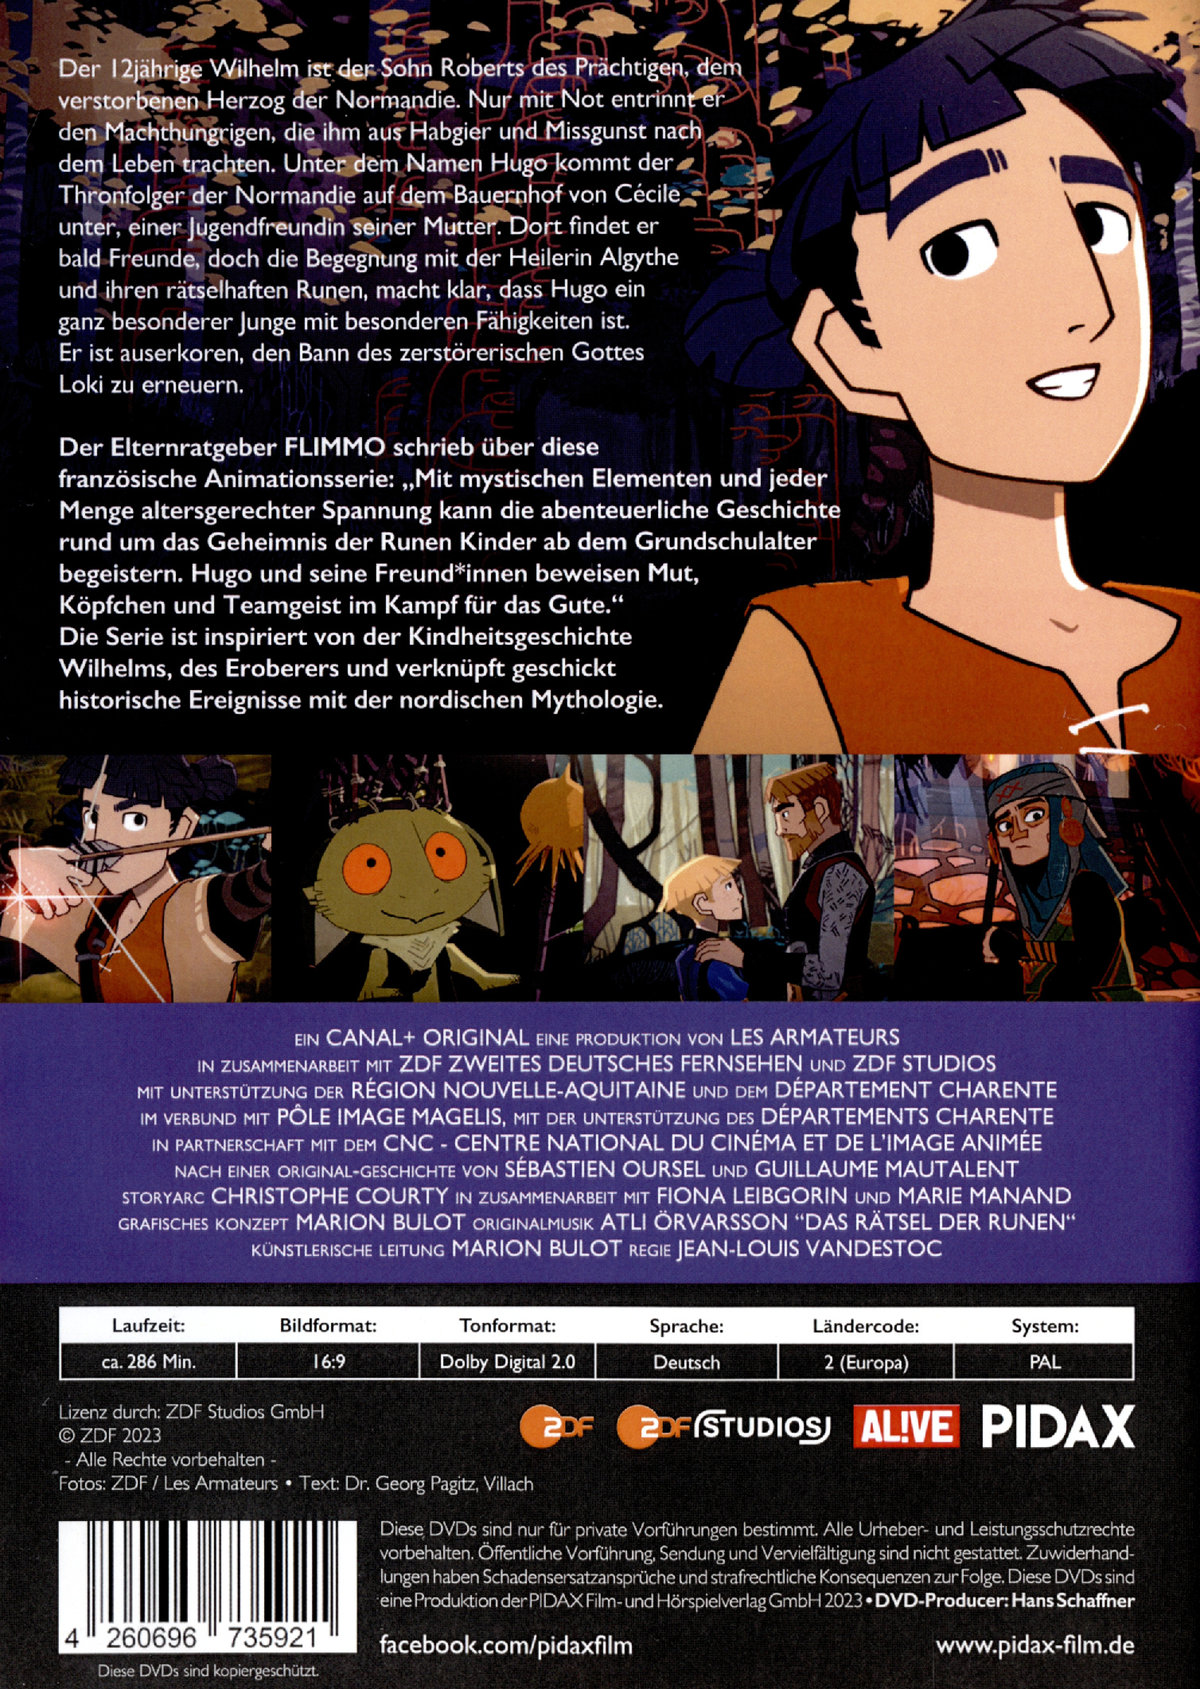 Das Rätsel der Runen, Vol. 1 / Die ersten 13 Folgen der Fantasy-Zeichentrickserie von den Machern von DAS GEHEIMNIS VON KELLS (Pidax Animation)  [2 DVDs]  (DVD)